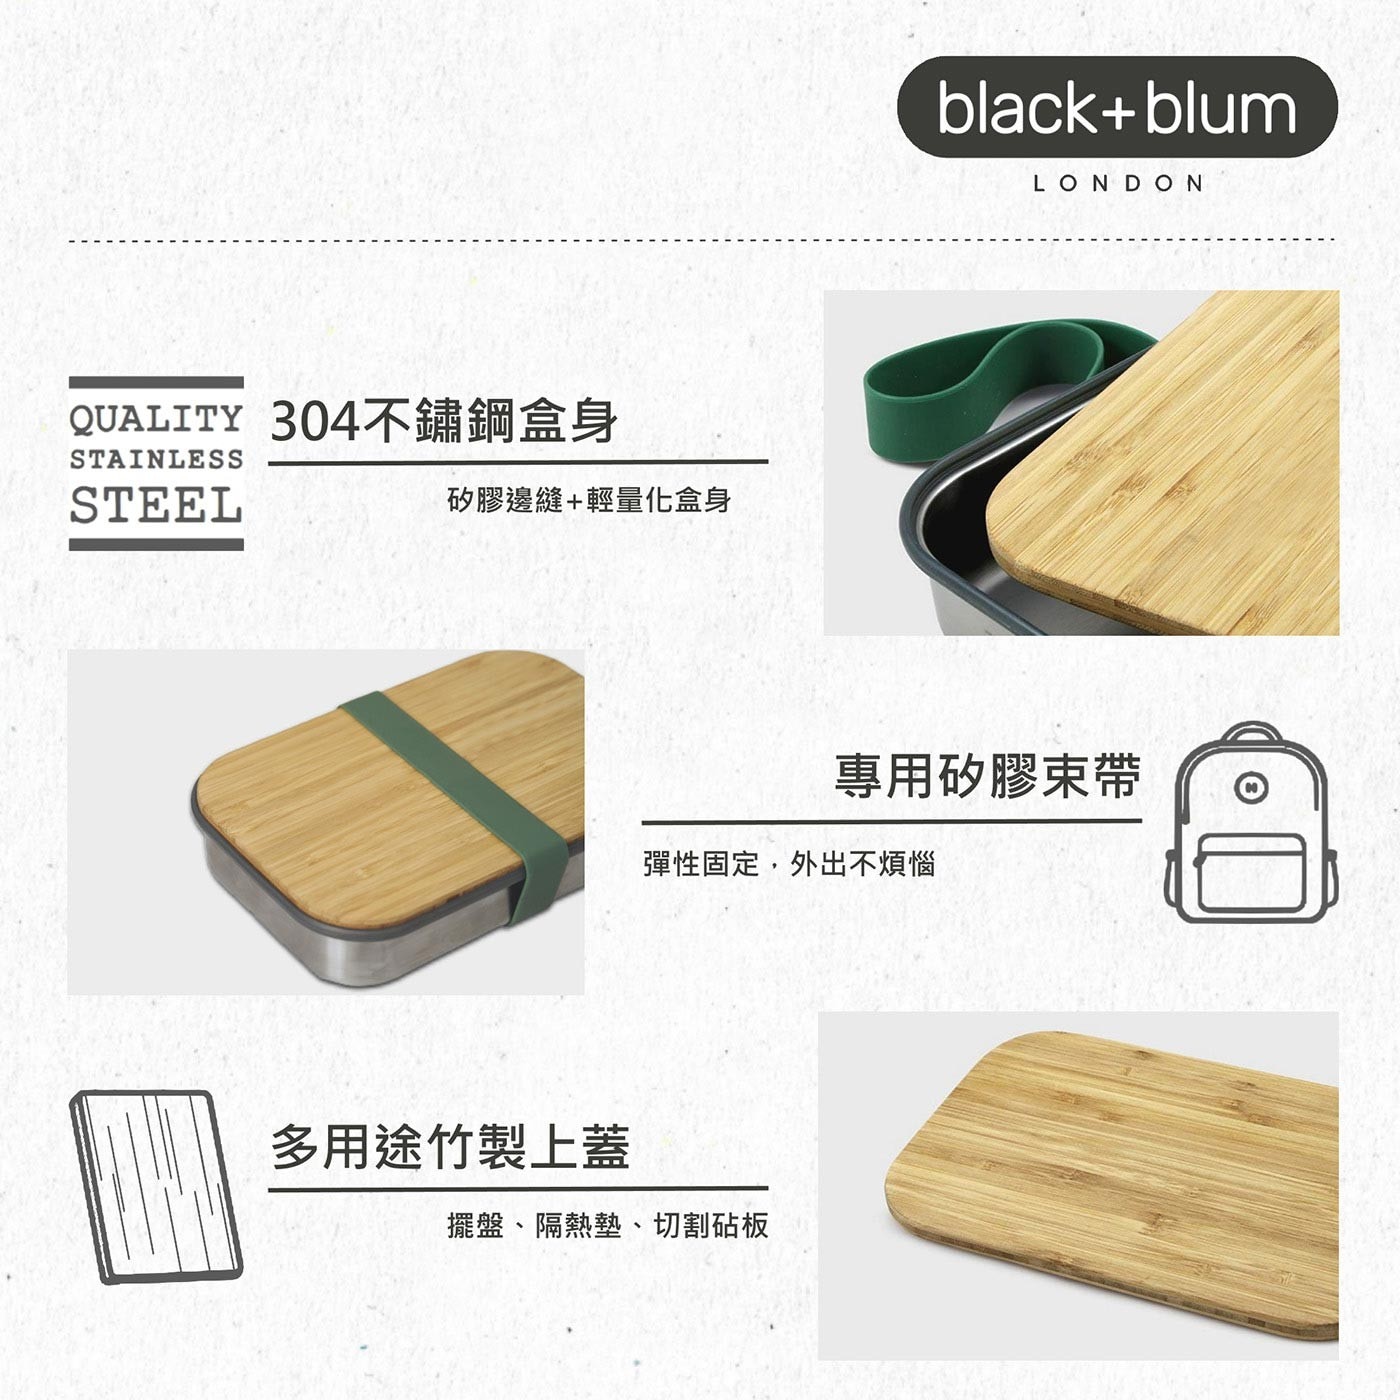 英國black+blum不鏽鋼輕食盒900毫升-熱情橘，304不鏽鋼盒身、耐熱矽膠束帶邊條，高品質天然竹製上蓋，整體輕量化設計，針對土司三明治優化的盒身尺寸。